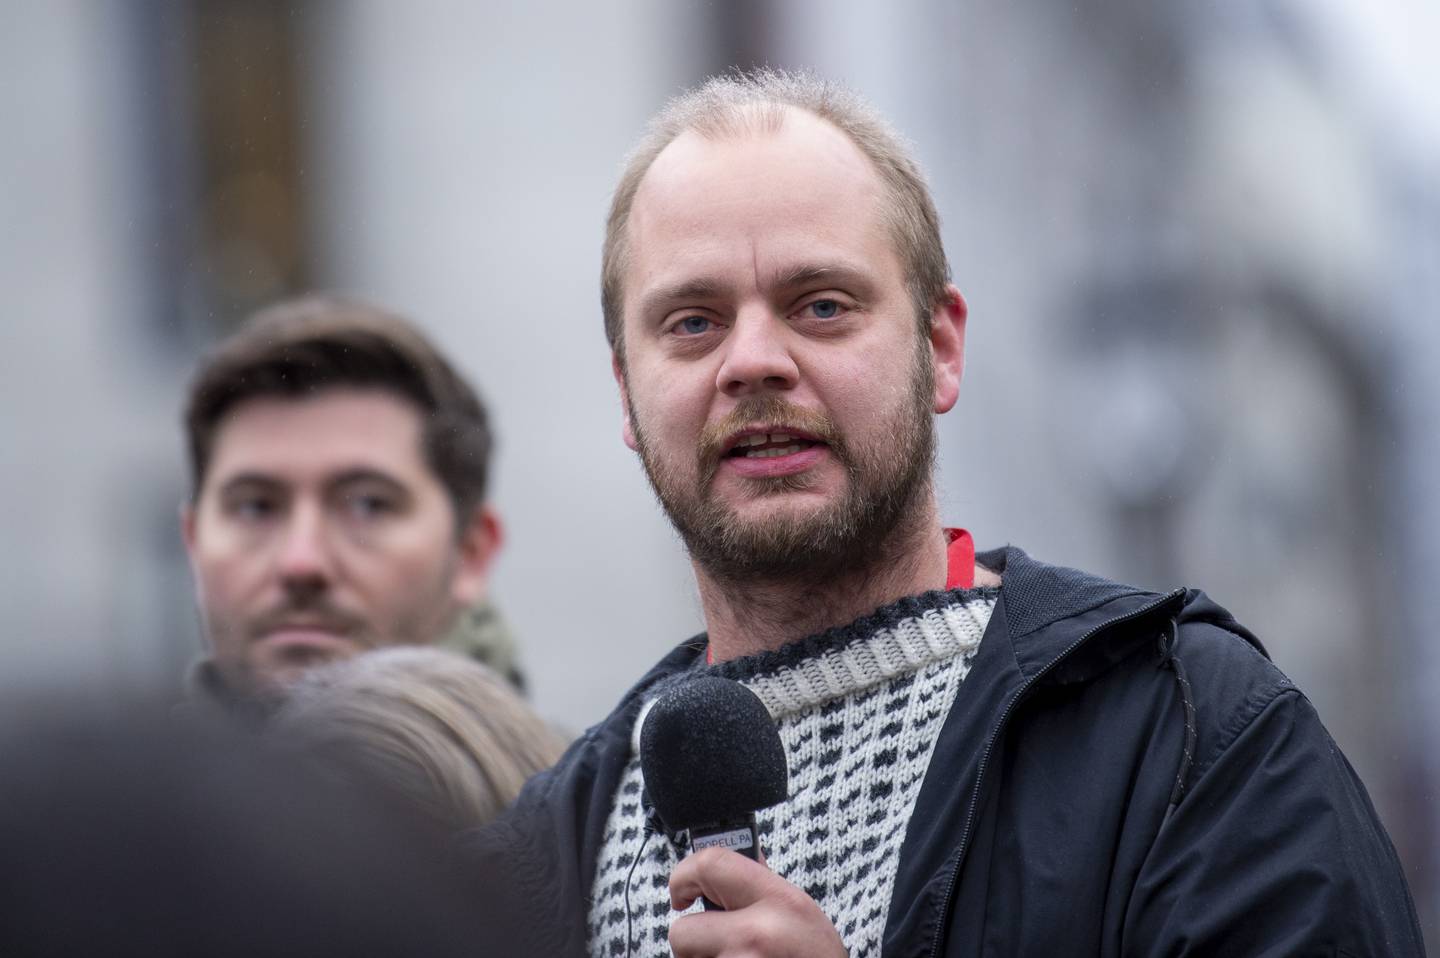 Oppsagte SAS-ansatte demonstrerer i Norge foran Stortinget på Eidsvolls plass. 2.200 skandinaviske SAS-ansatte ble oppsagt fra SAS som følge av koronapandemien. Mímir Kristjánsson fra Rødt talte kort fra scenen.